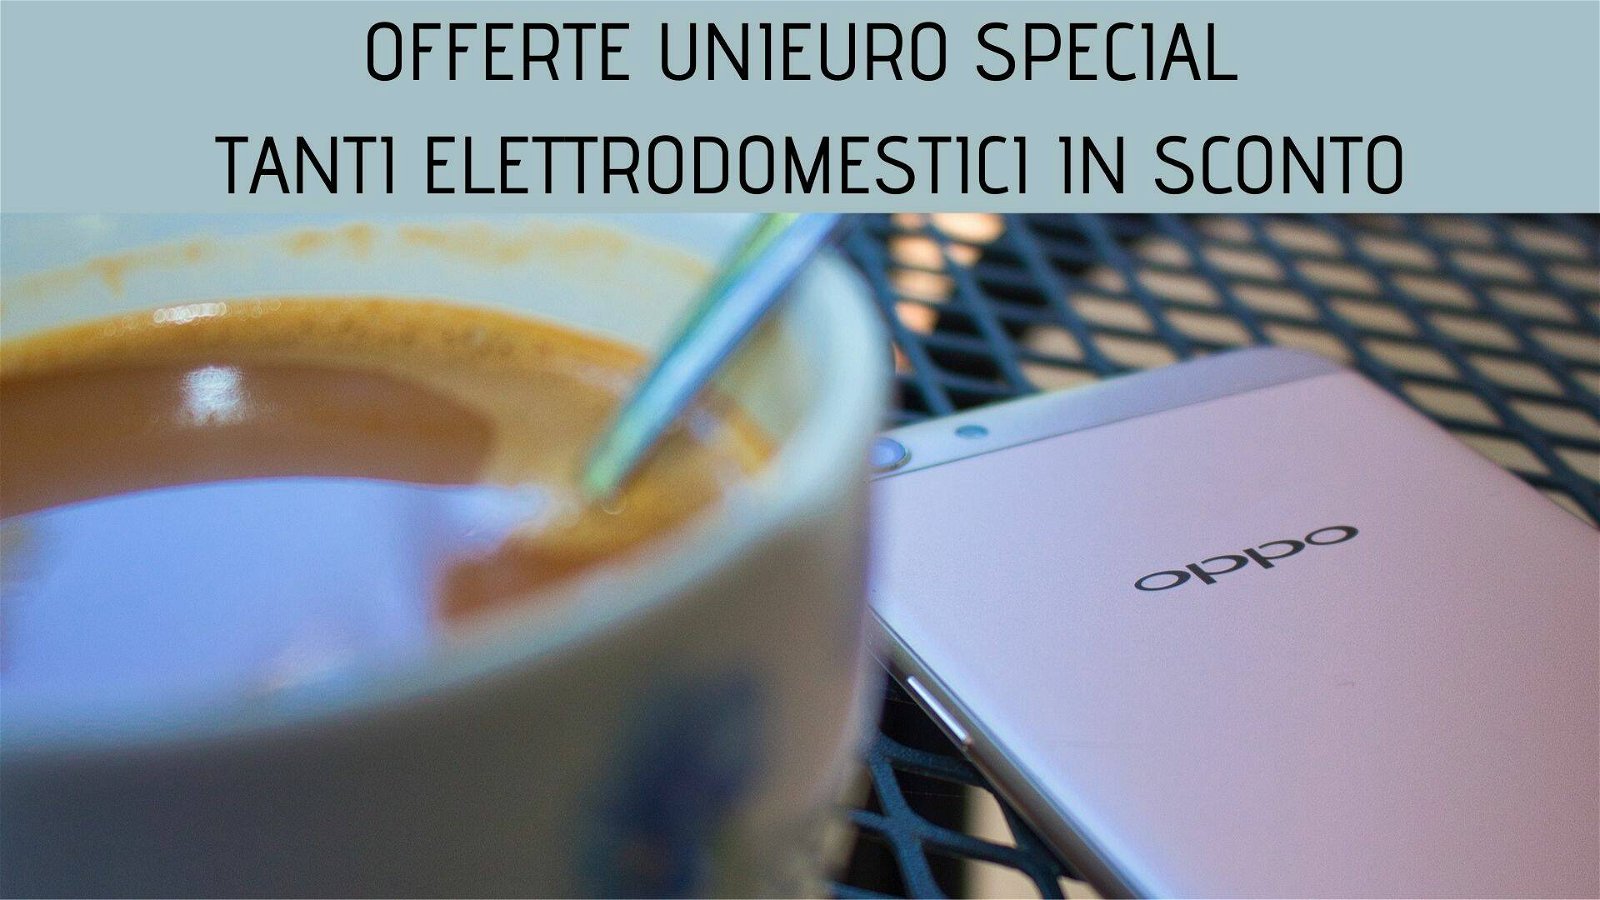 Immagine di Offerte Unieuro Special: smartphone ed elettrodomestici in sconto fino al 13 settembre